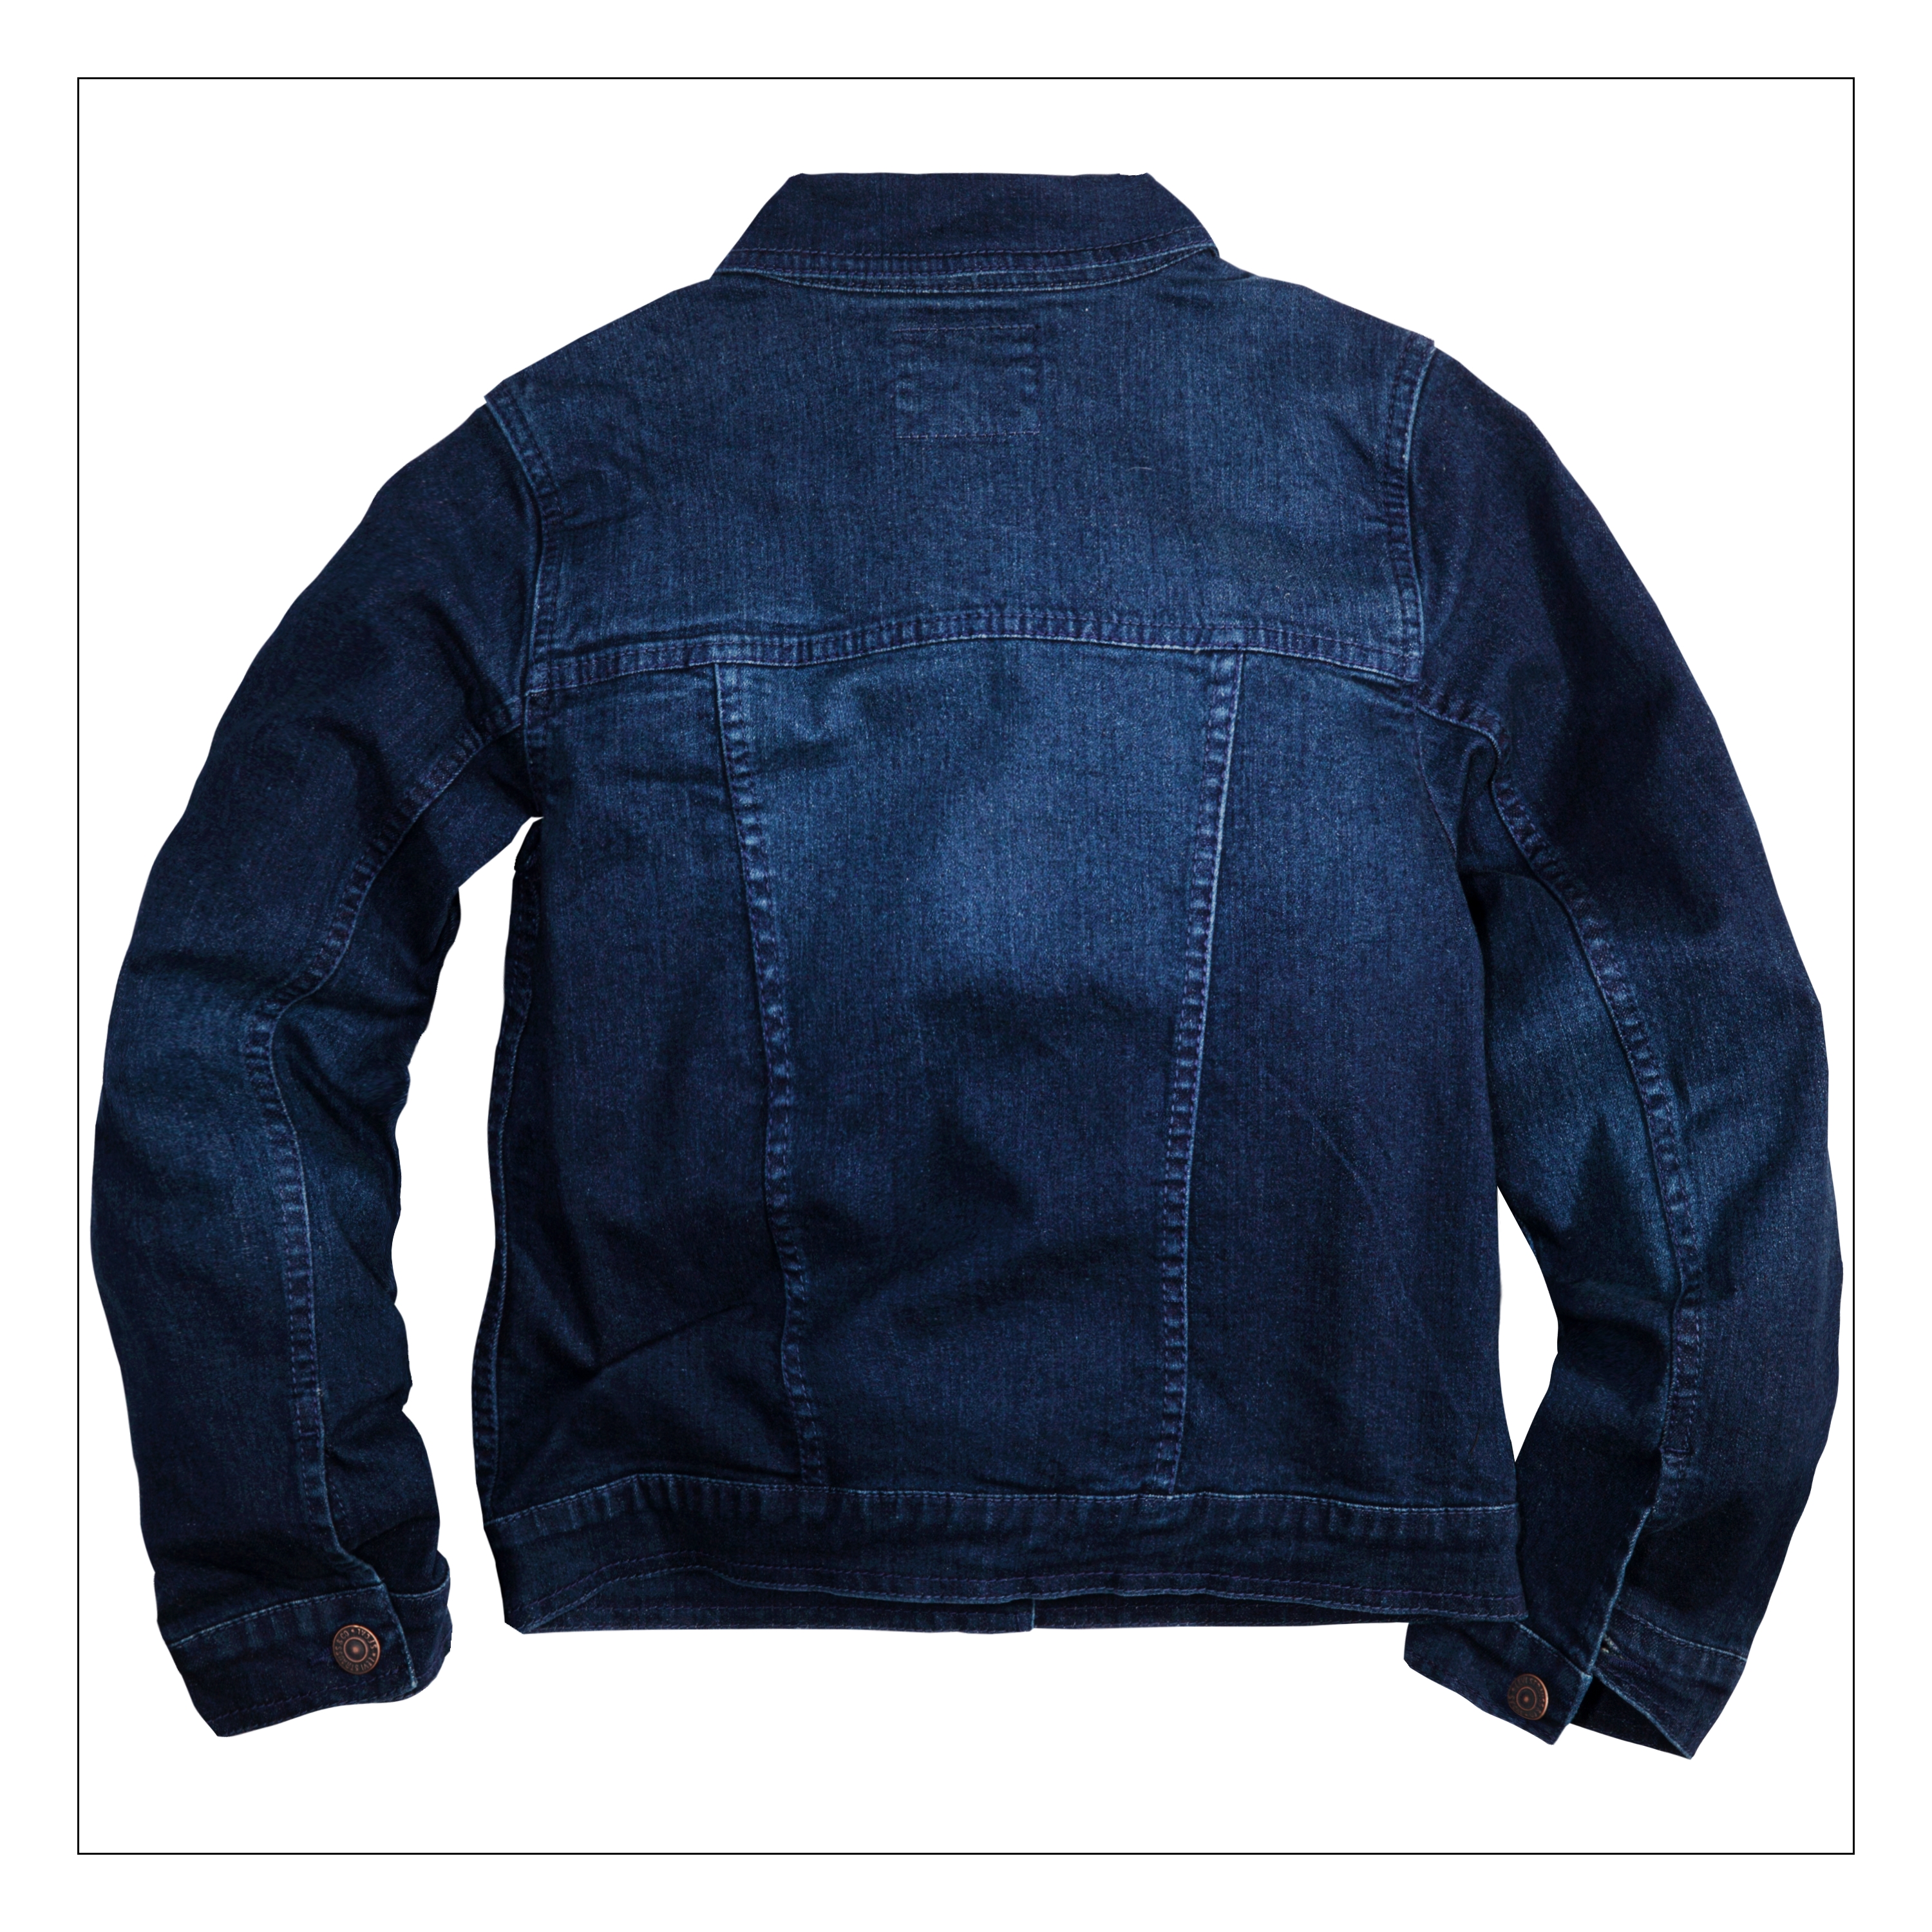 Levi's Girls' Trucker Jacket, Sizes 4-16 - image 2 of 2